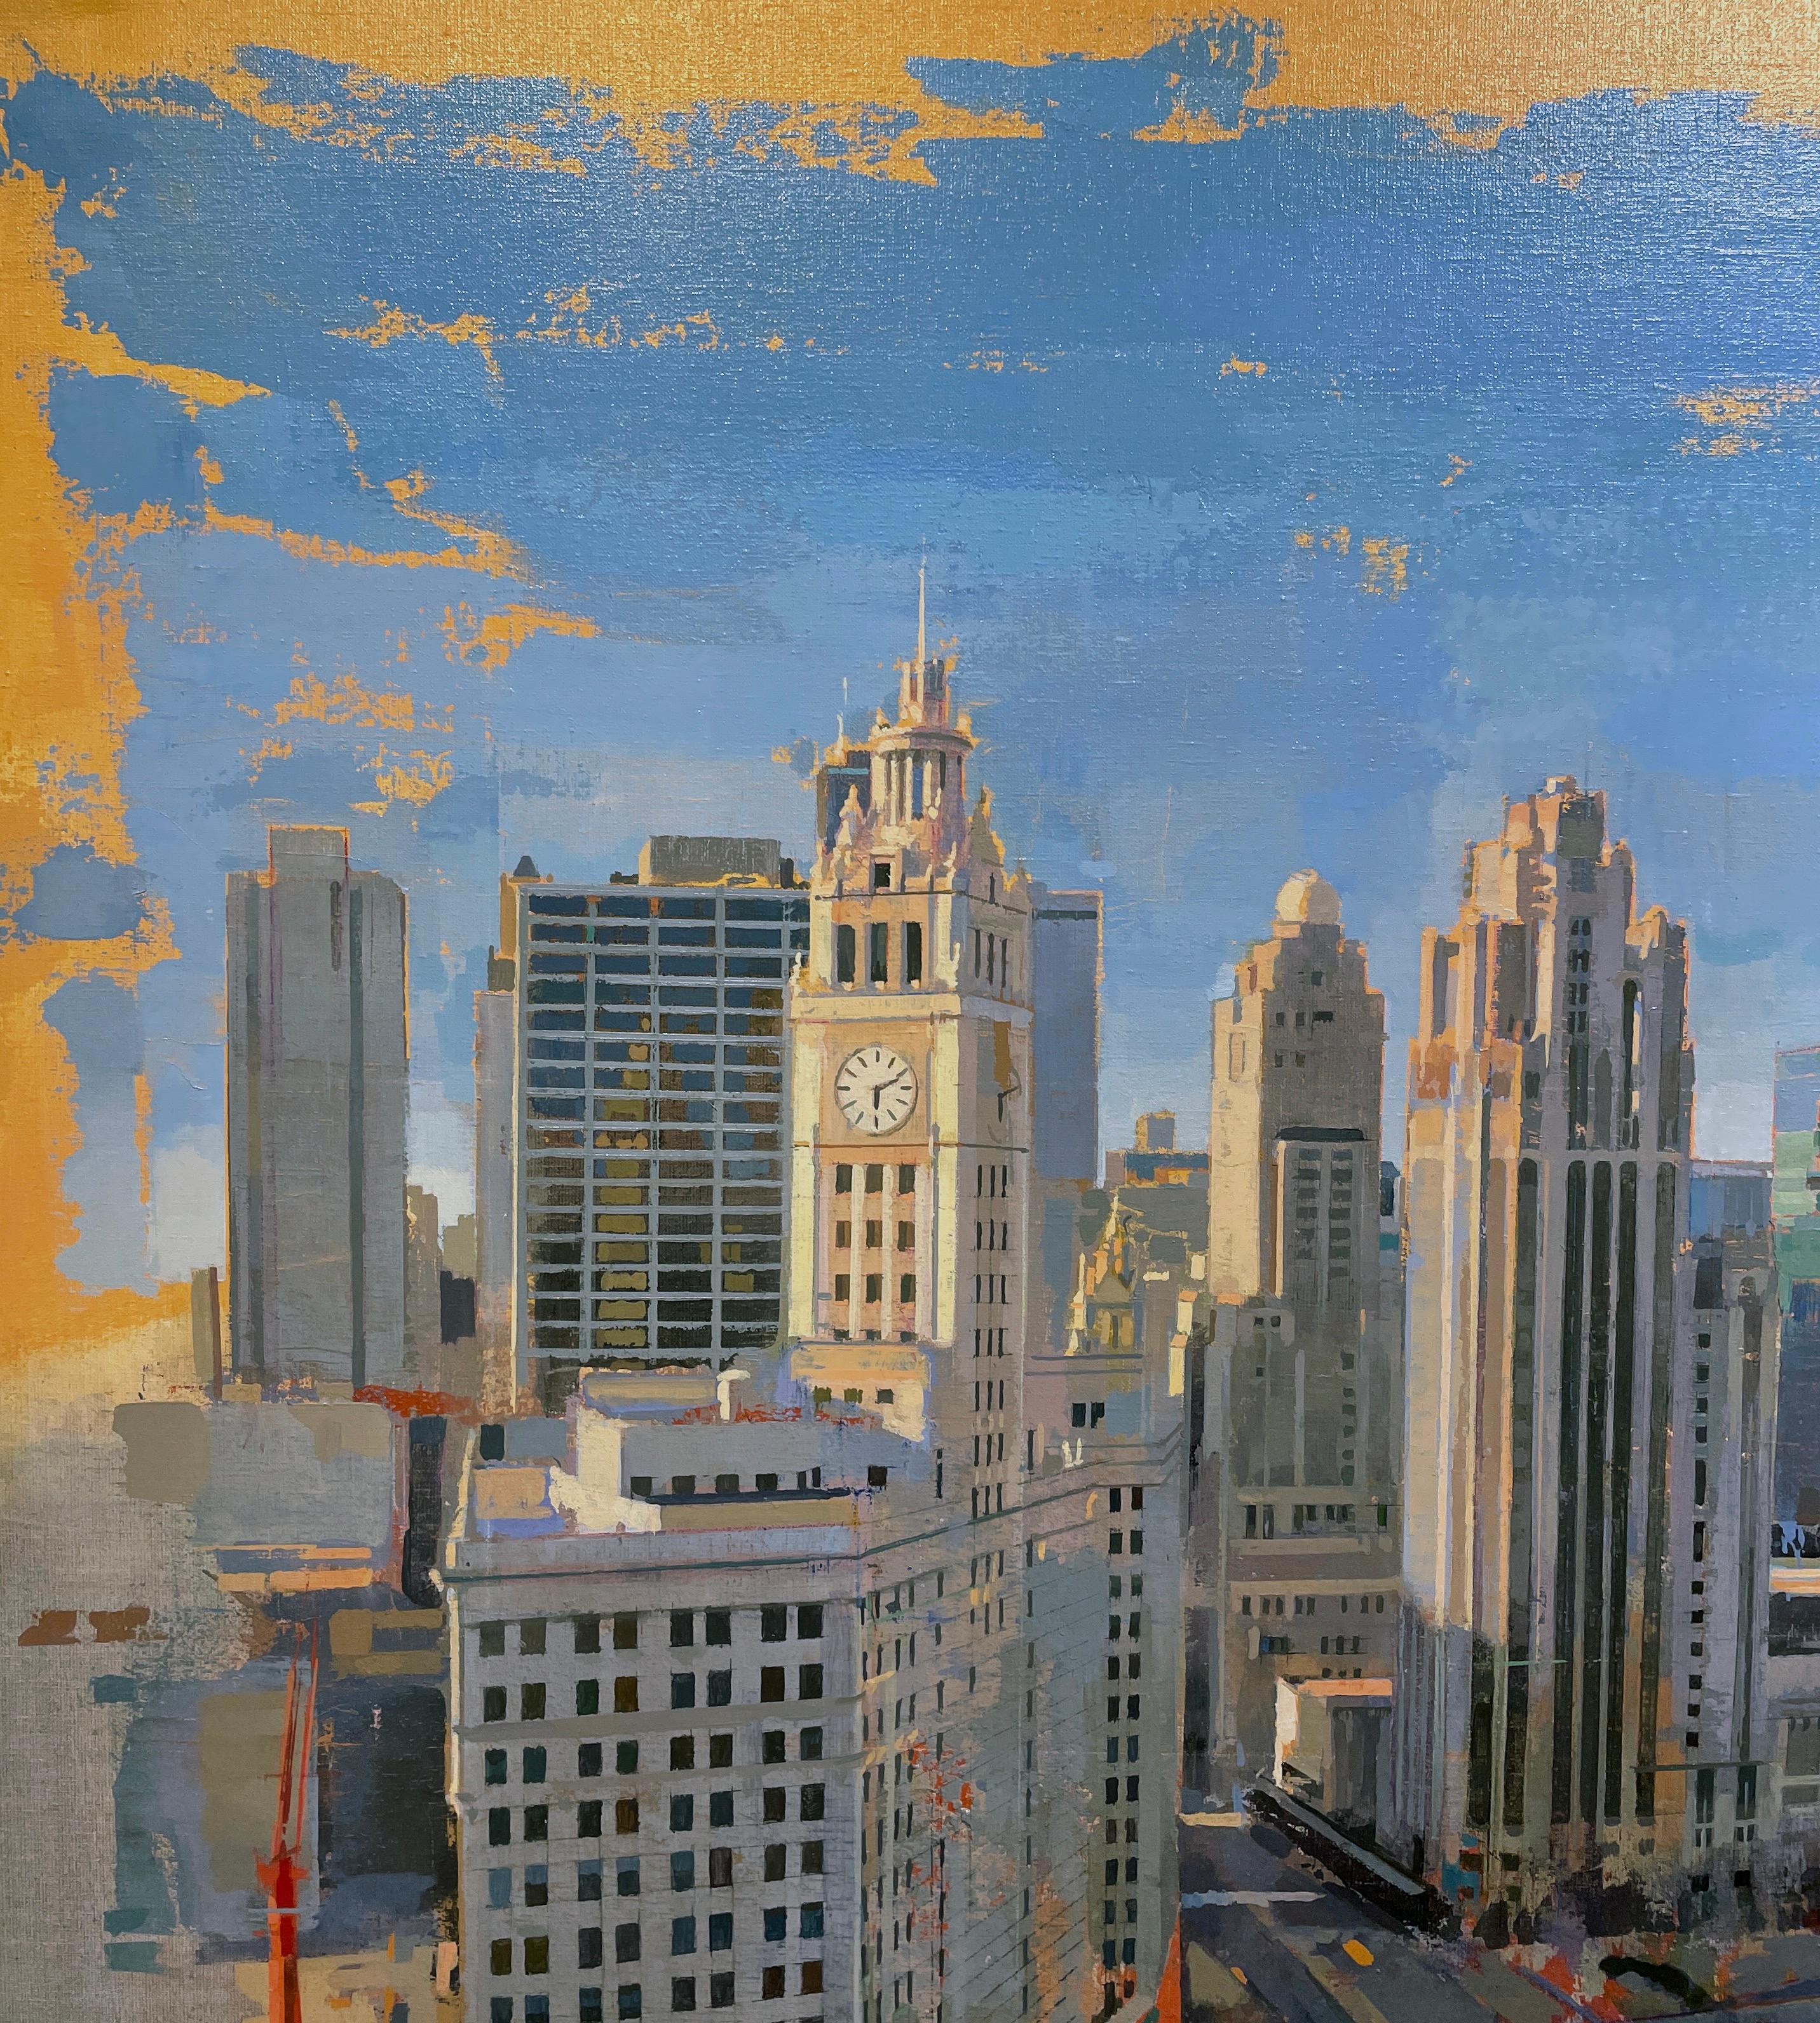 Chicago von London – Vogel-Eye- Ansicht aus dem London House Hotel, Chicago, IL (Grau), Abstract Painting, von Albert Vidal Moreno